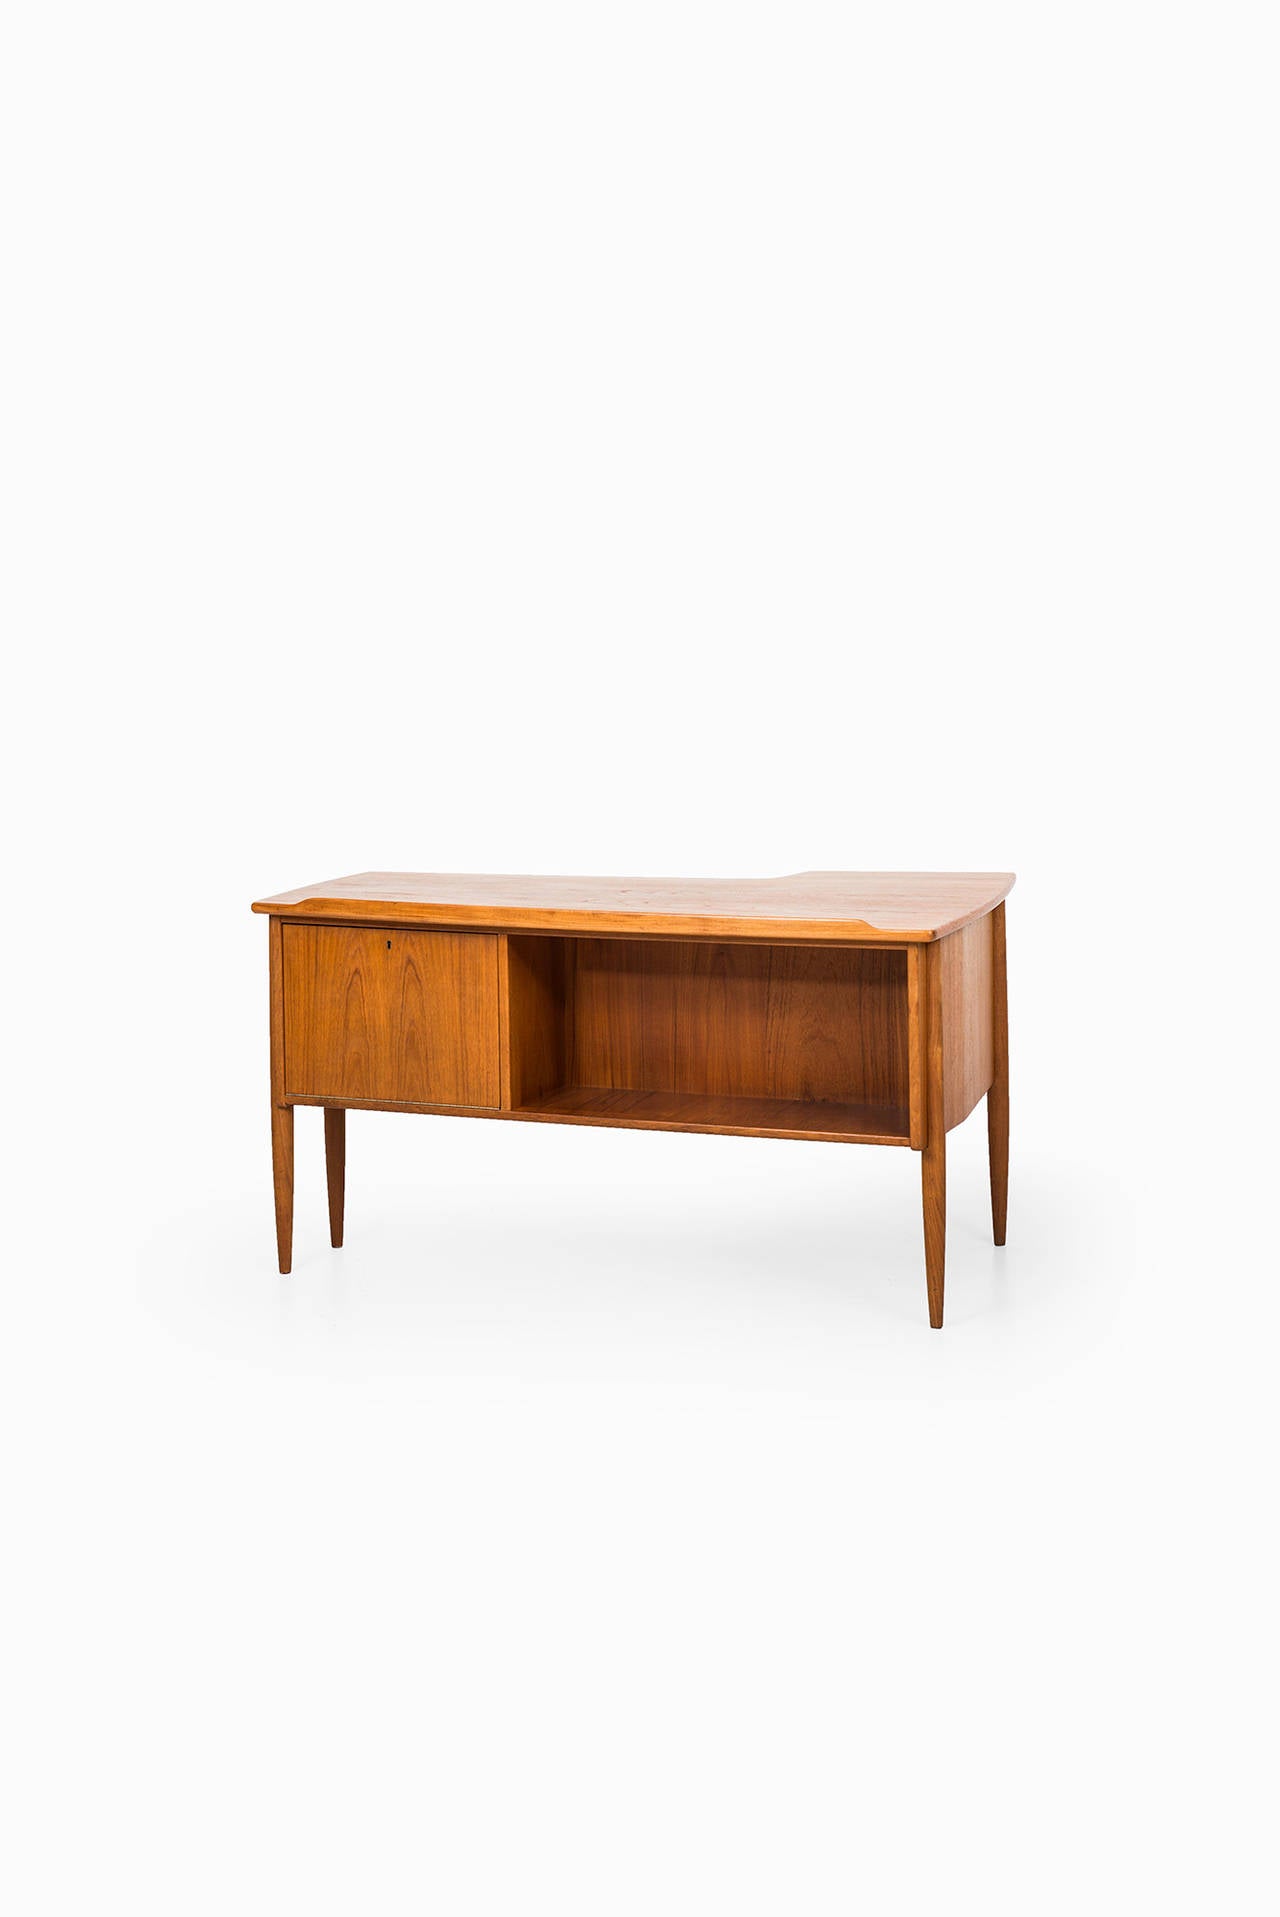 Teak Göran Strand Desk Model A10 by Lelångs Möbelfabrik in Sweden